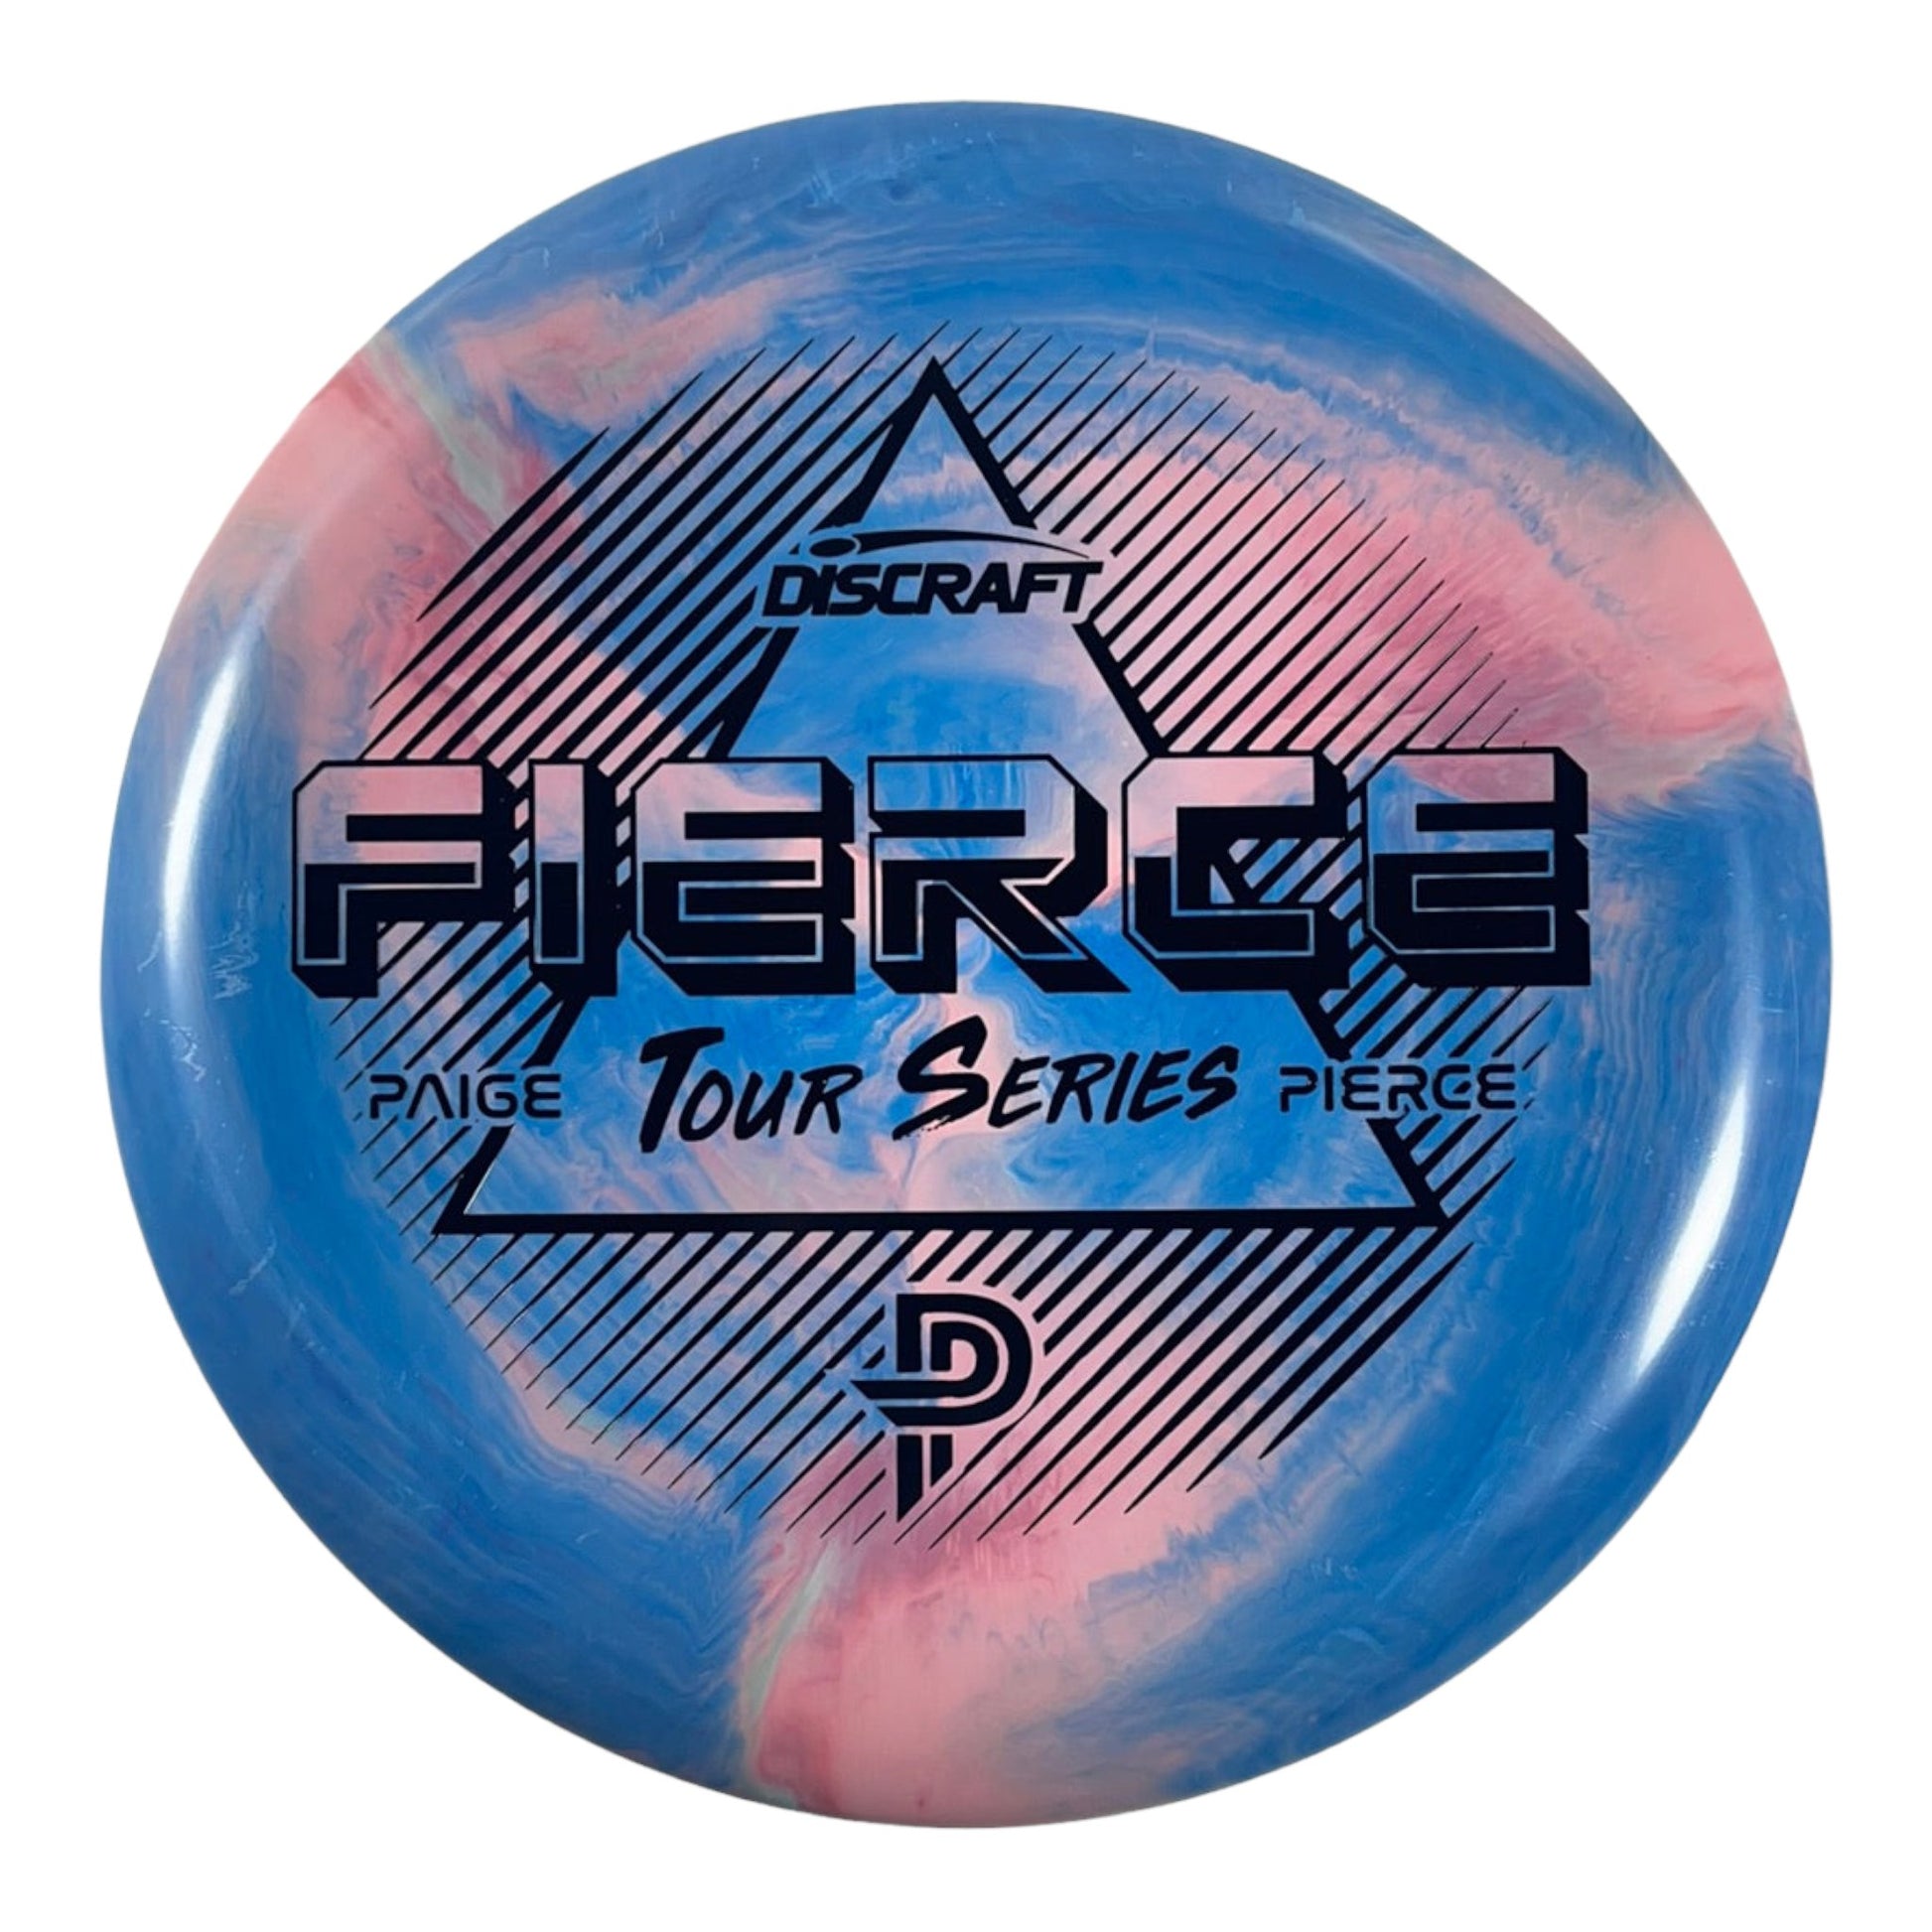 Discraft Fierce | ESP | Blue/Pink 174g (Paige Pierce) Disc Golf